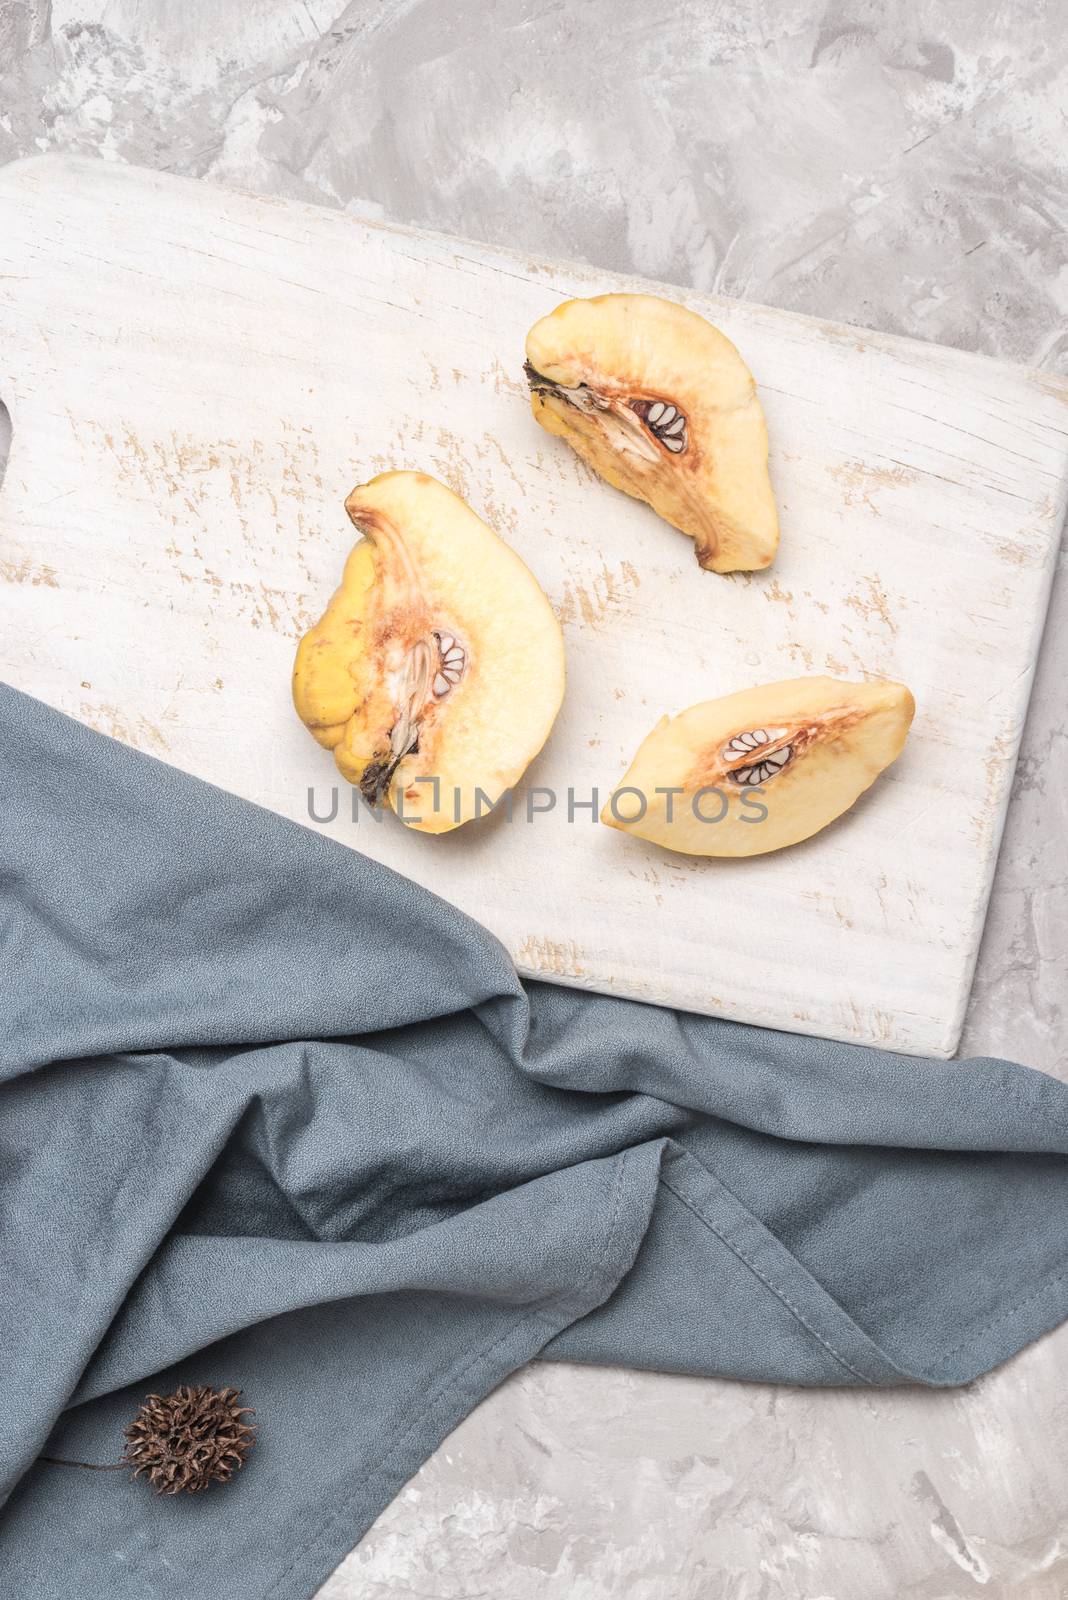 Quince fruit parts on concrete kitchen countertop.